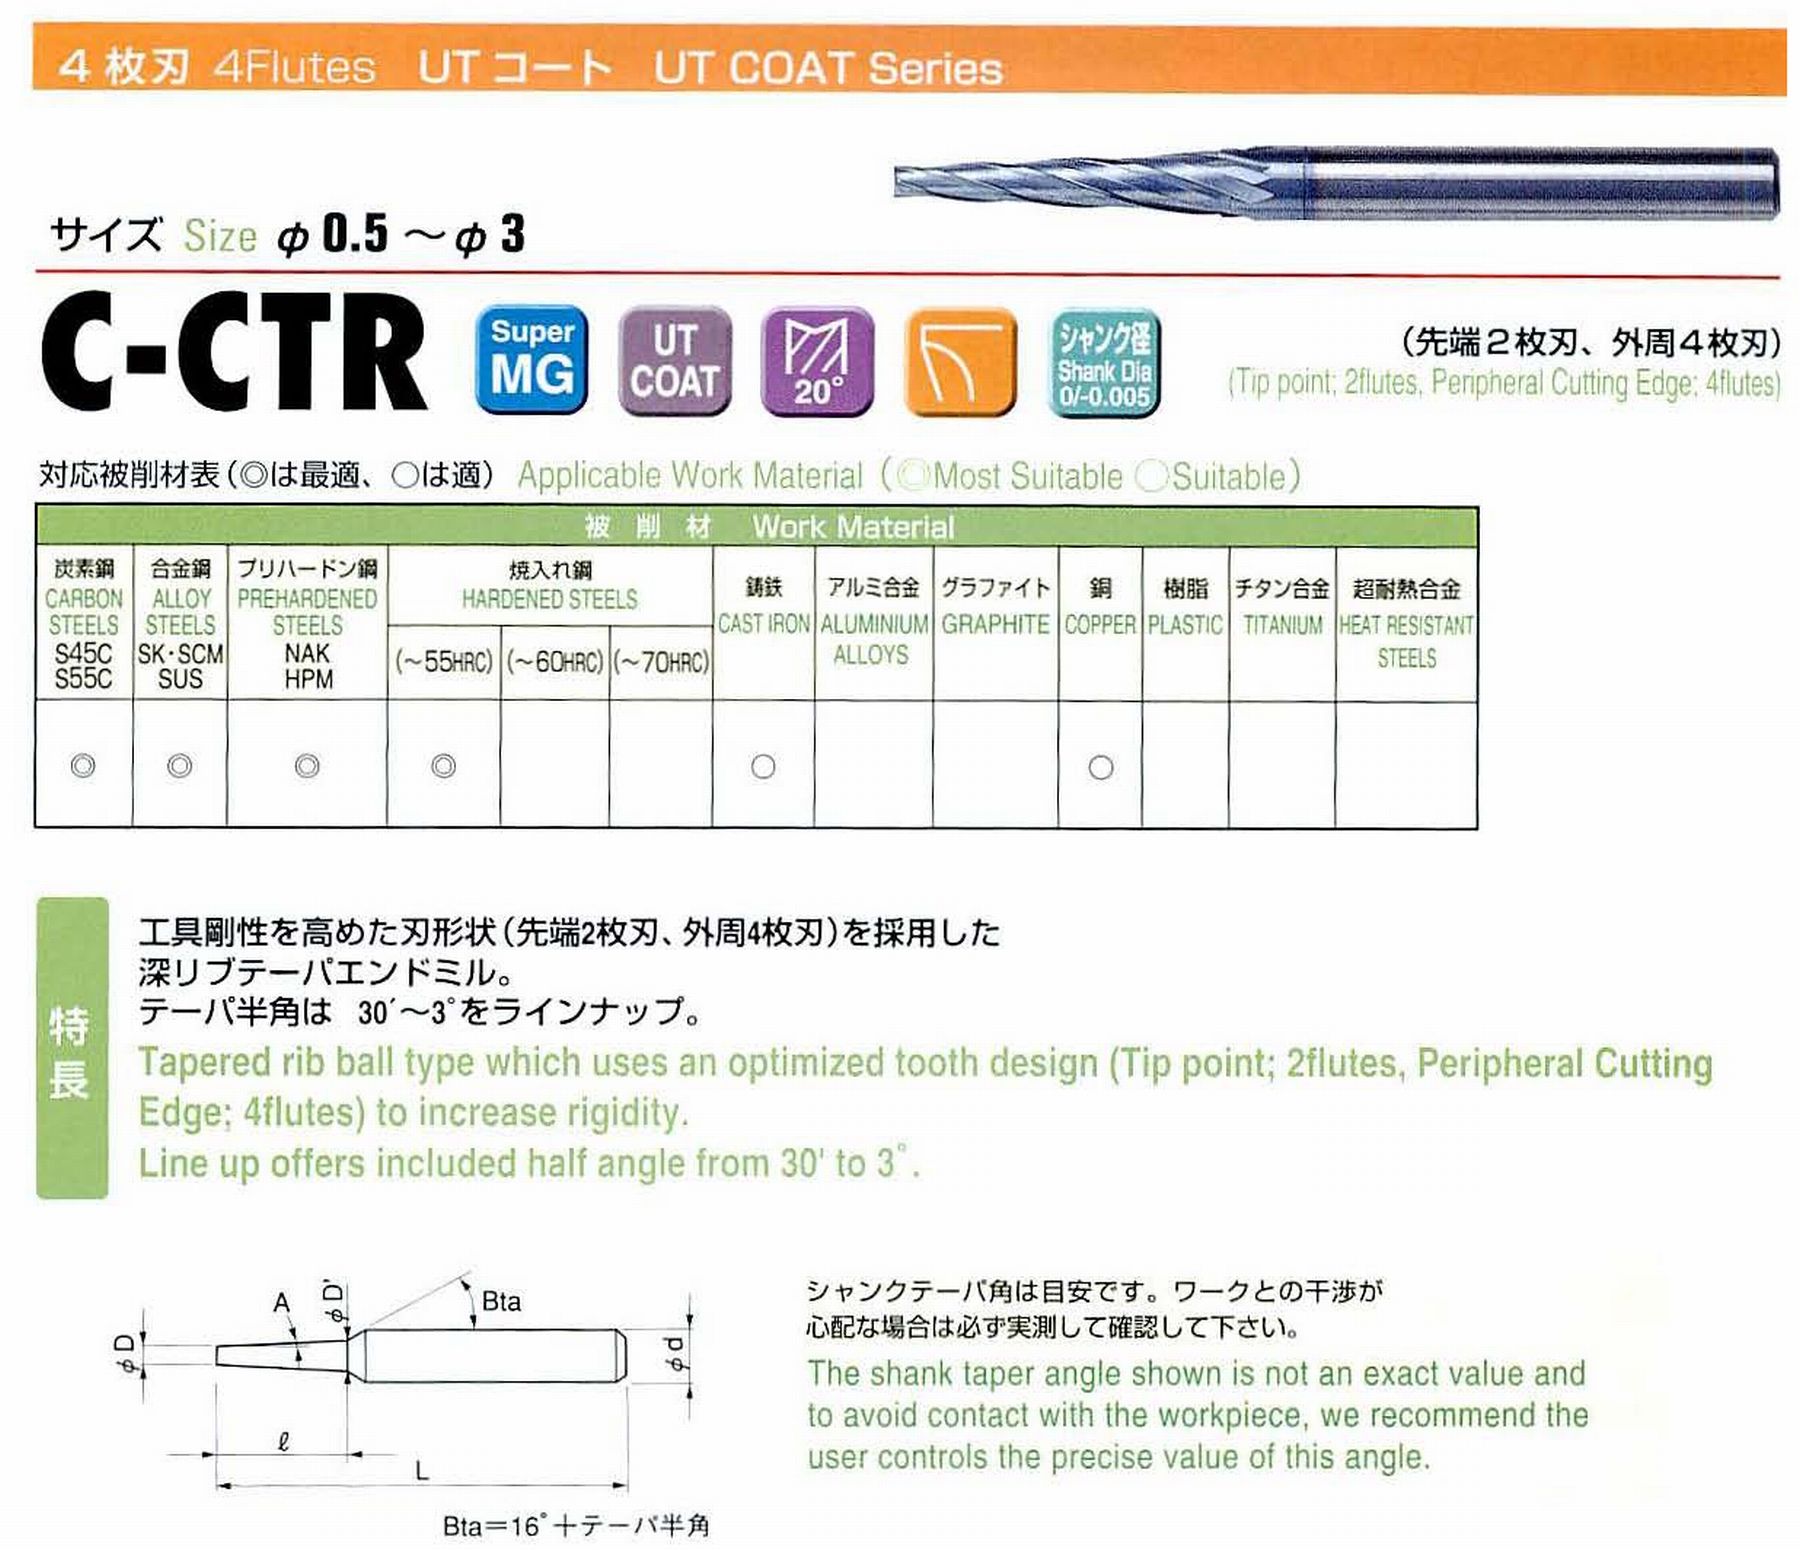 ユニオンツール 4枚刃 C-CTR4017-8-2 先端径1.7 テーパ半角1° 刃長8 大端径1.98 全長45 シャンク径4